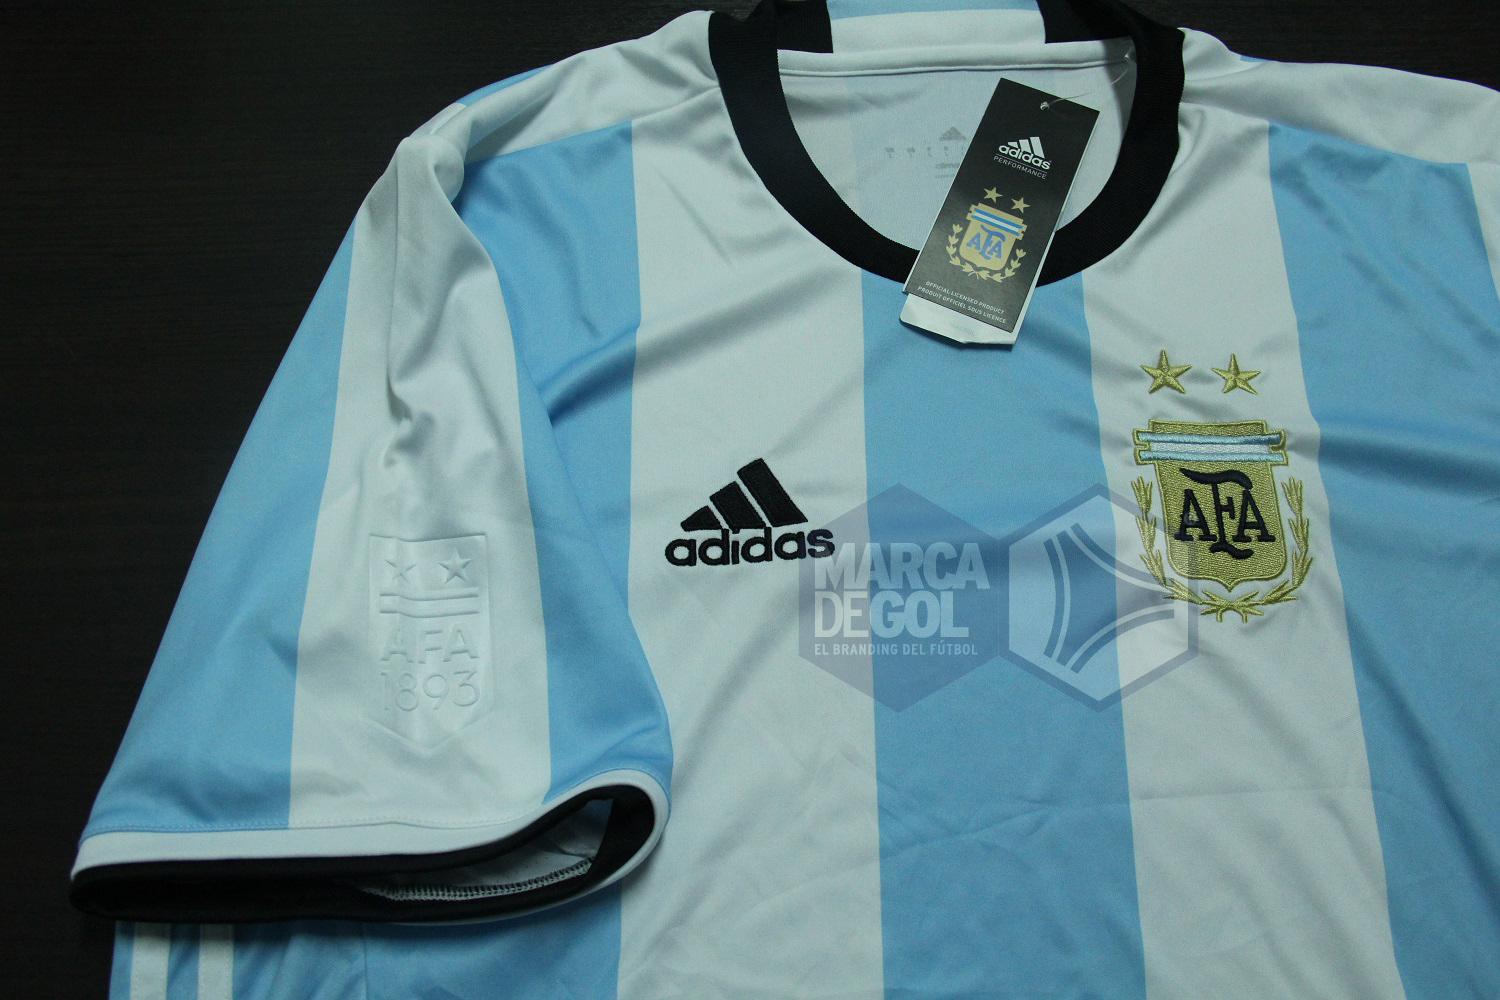 Camiseta Argentina adidas 2016 review 05